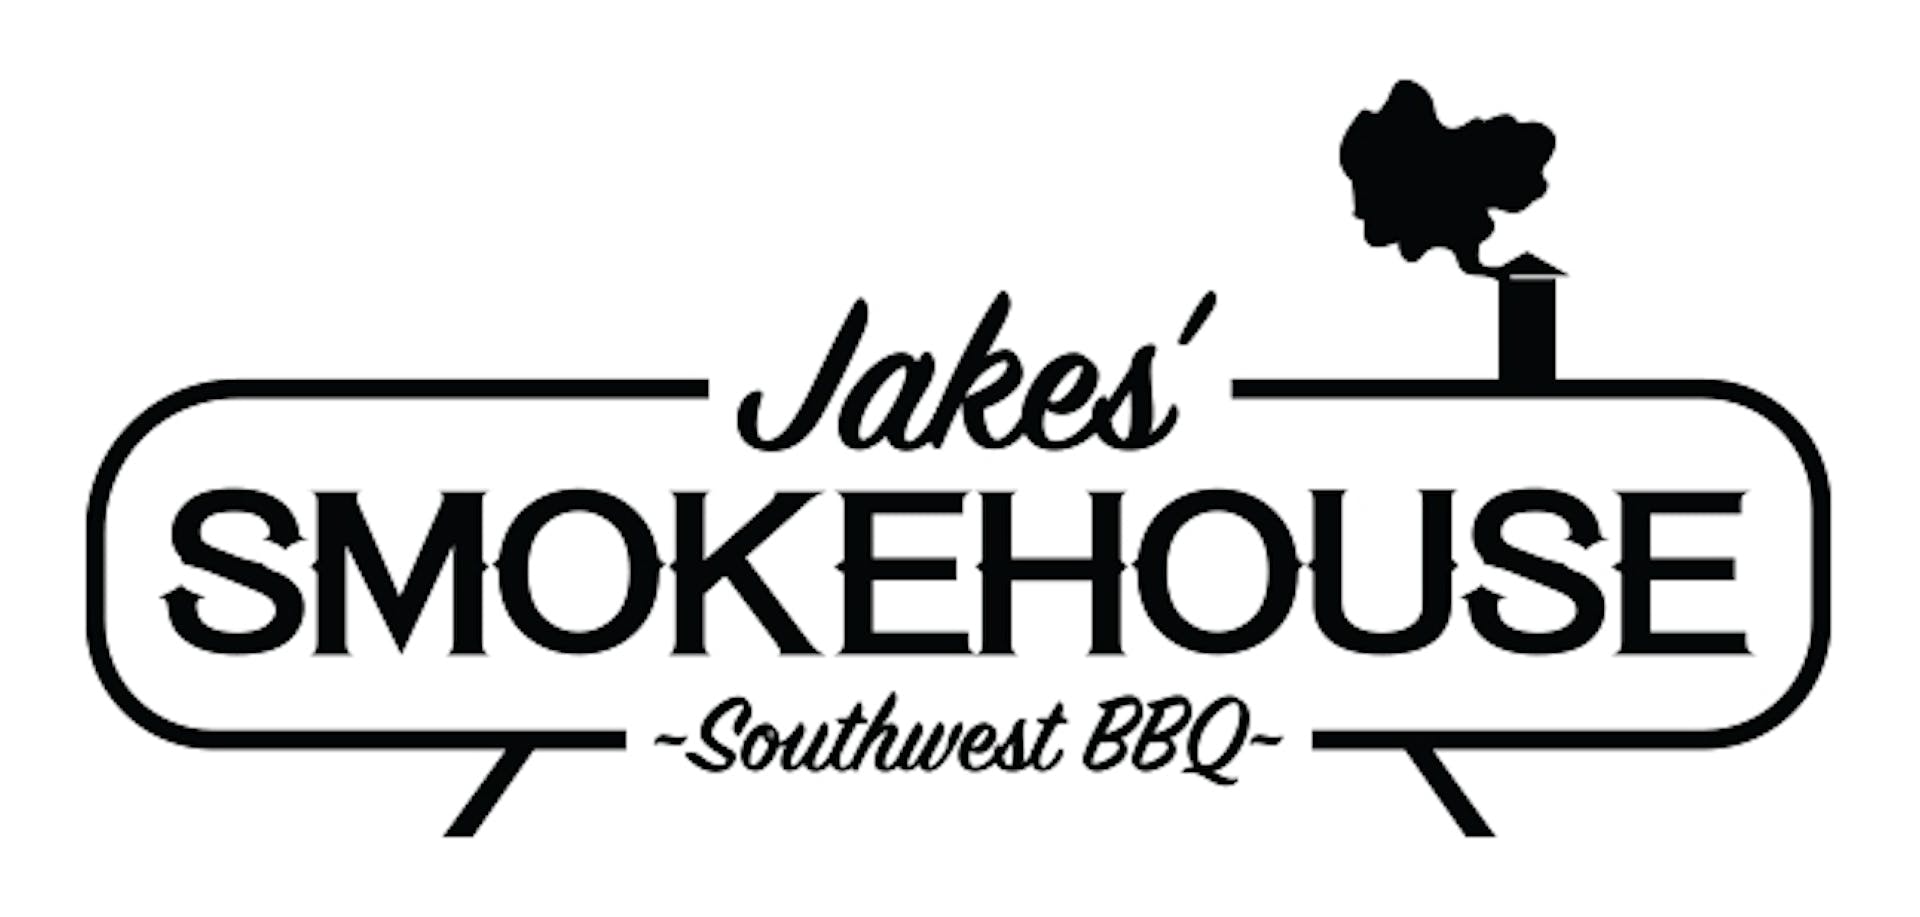 Jakes' Smokehouse